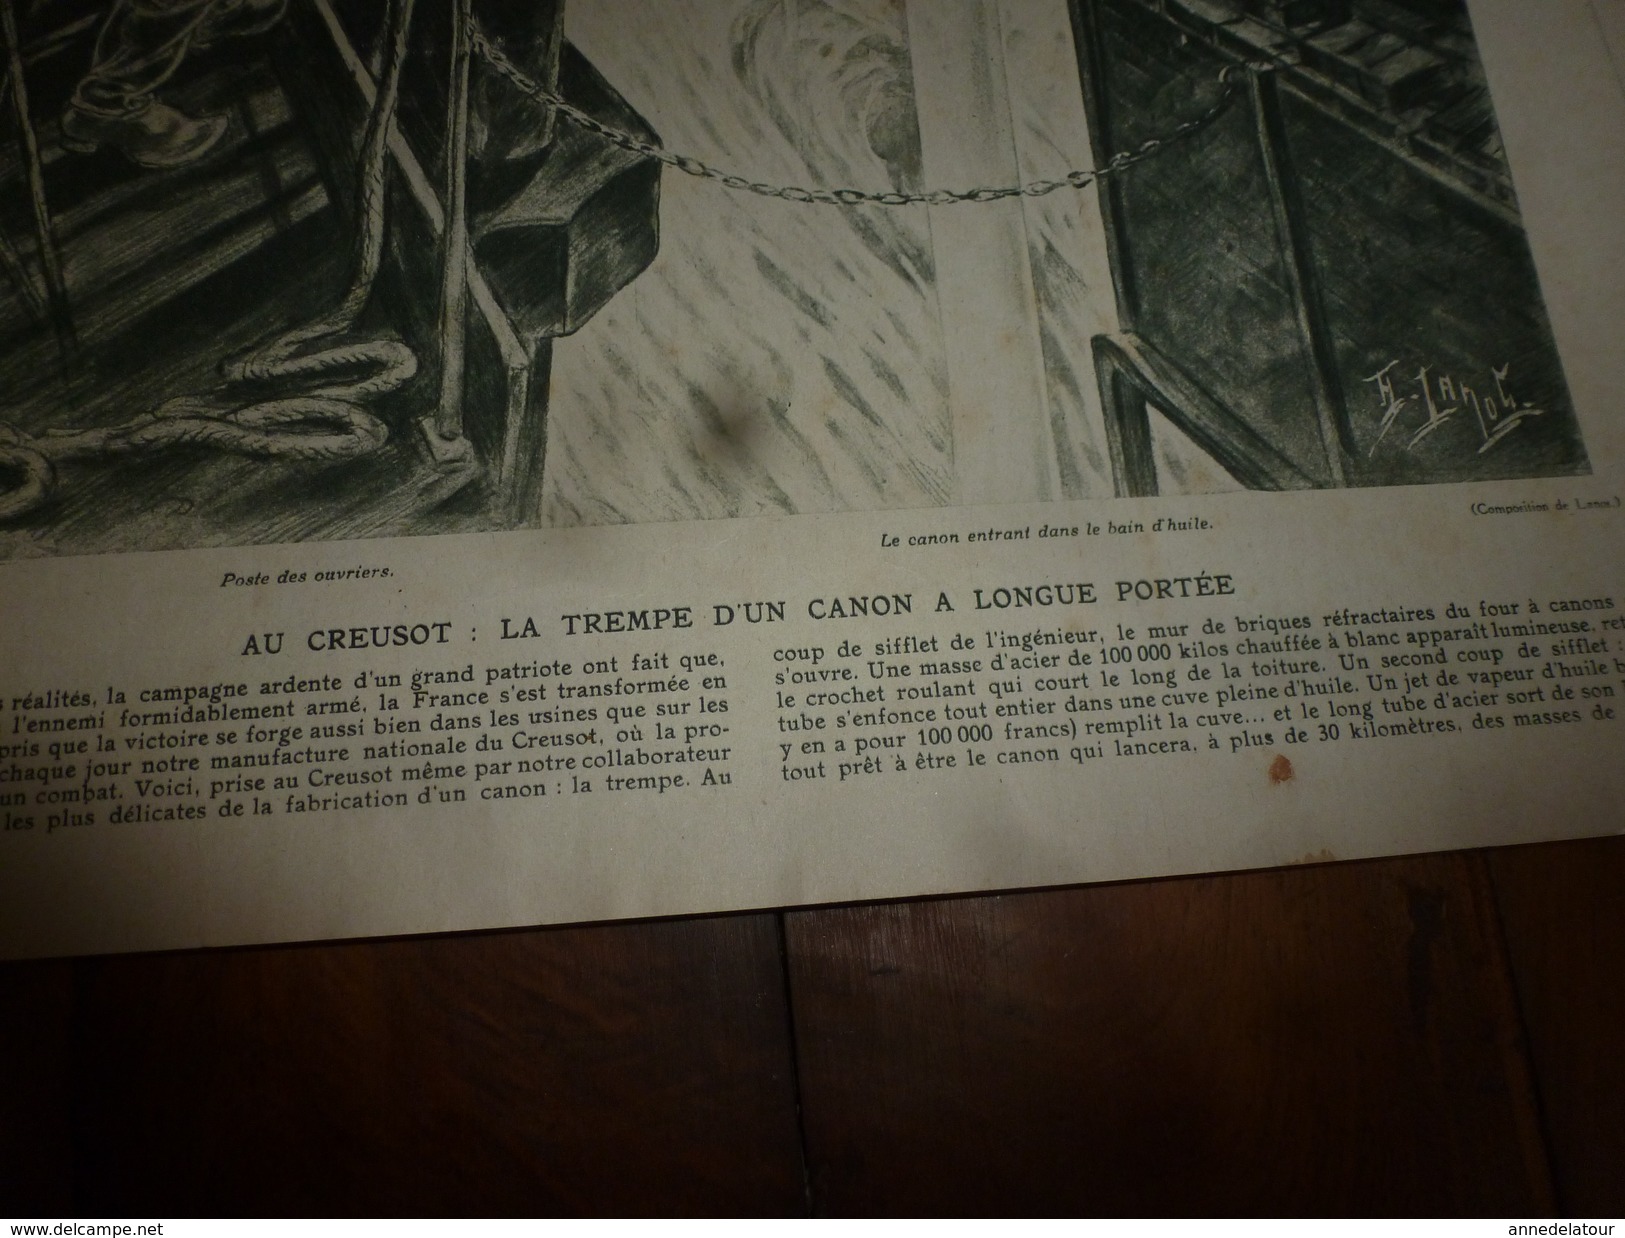 1915 J'AI VU: Metzeral;Venizelos;FRENCH-DAY;Téléphone de campagne:Au Creusot; La Tour des Templiers près de Nieuport